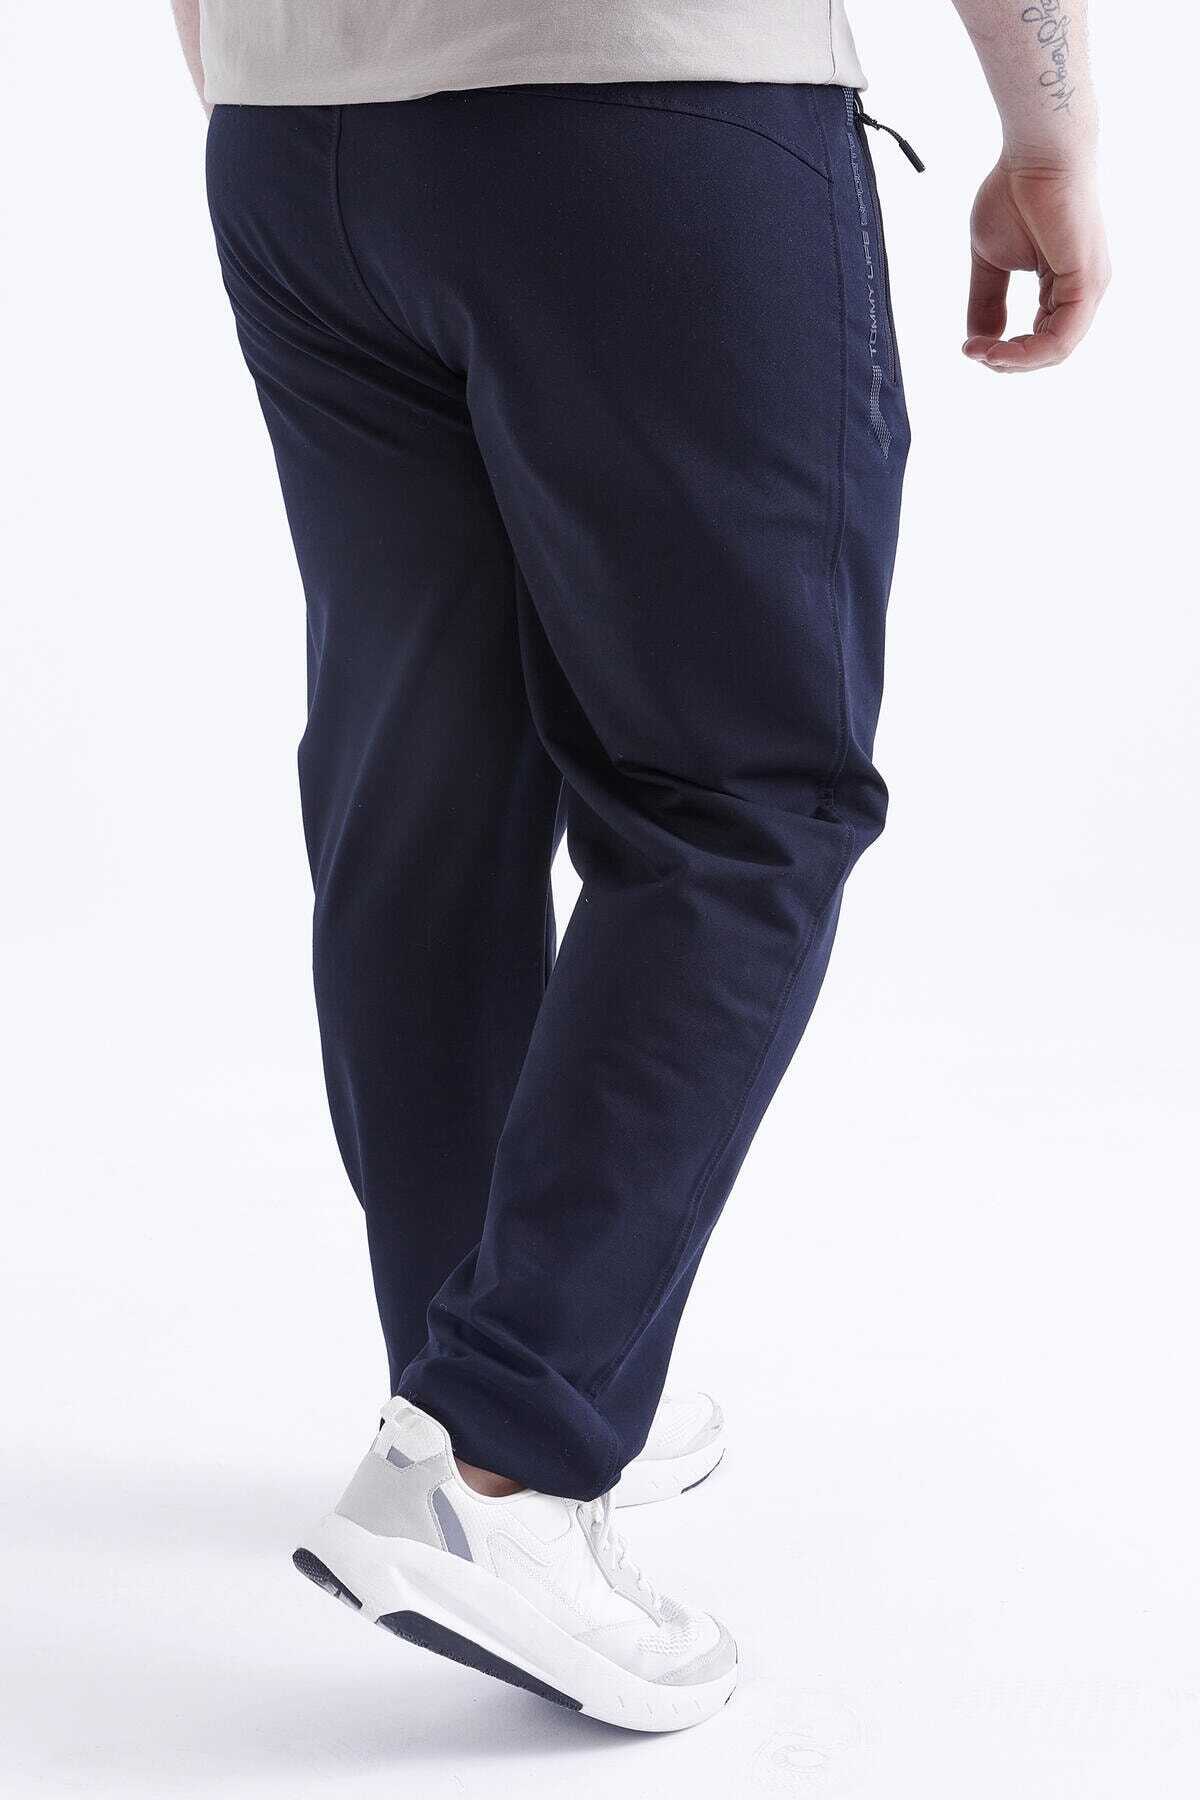 شلوار گرمکن جیب زیپ دار سایز بزرگ مردانه سرمه ای تیره برند Tommy Life